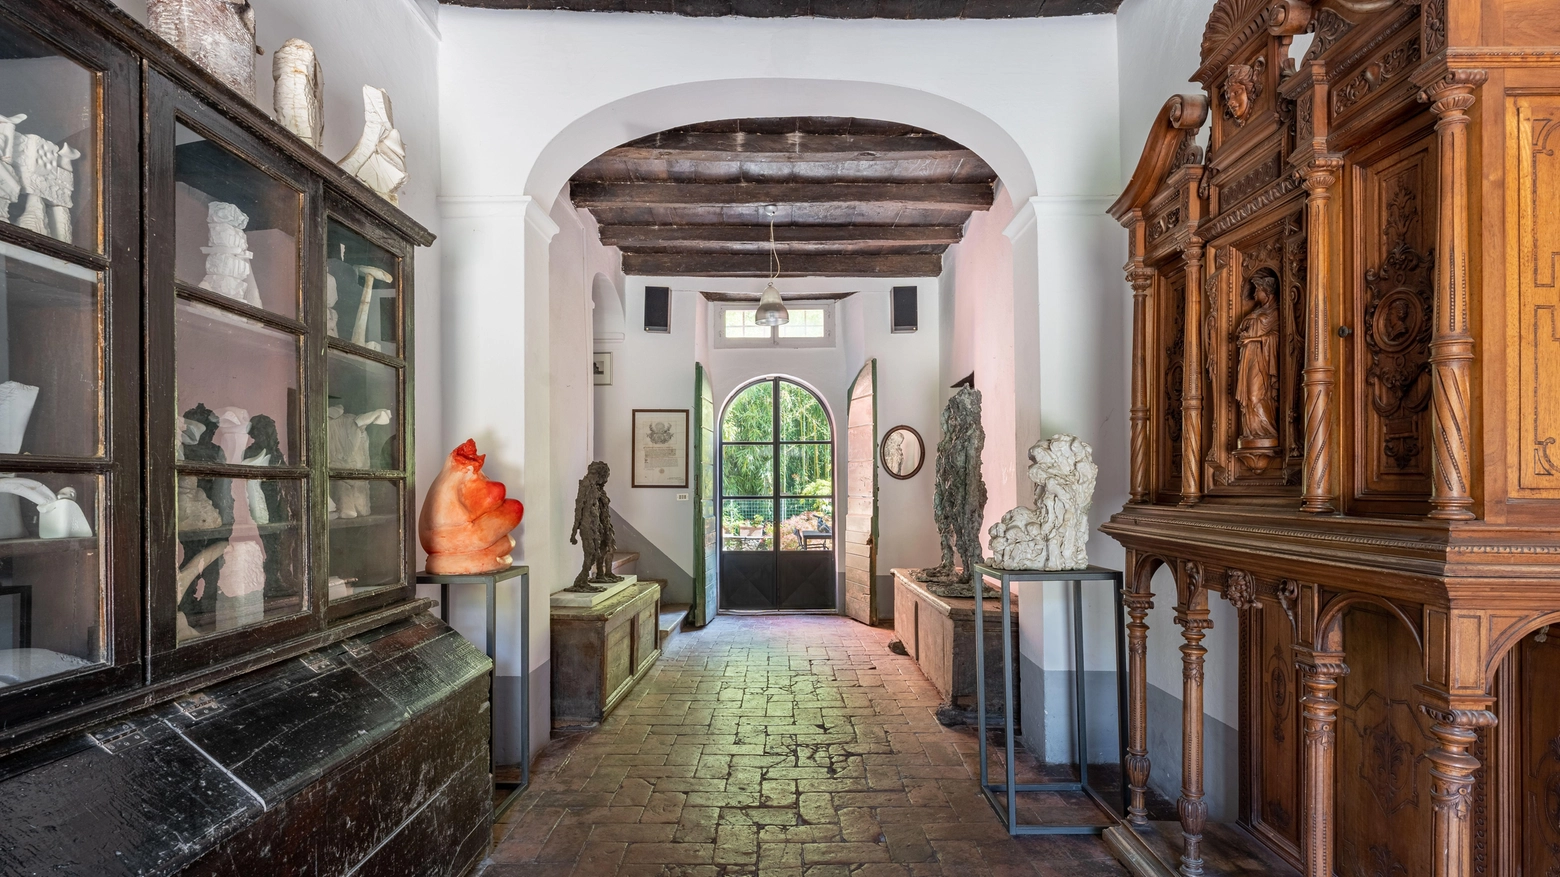 Villa-museo di Sørensen  In vendita per 2.4 milioni  Opere esposte all’estero